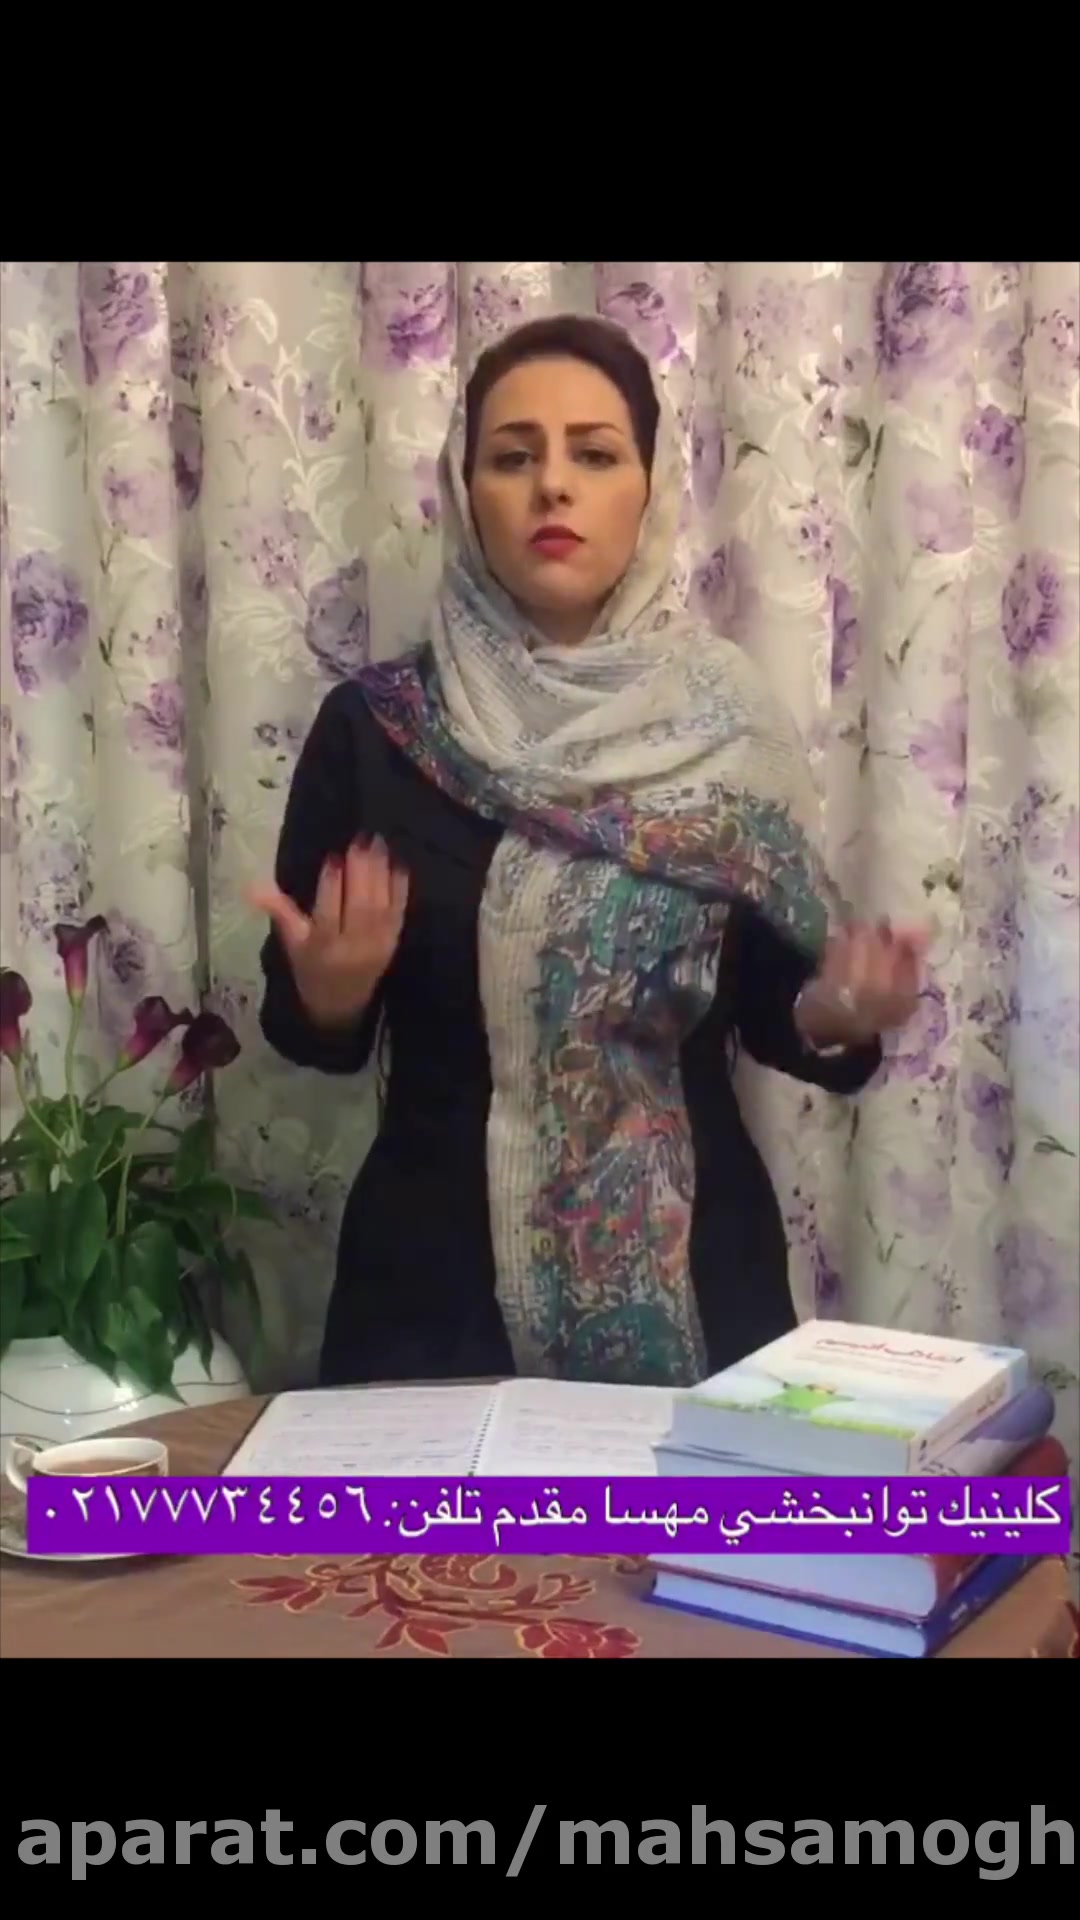 بهترین کلینیک گفتار درمانی کار درمانی درمان اتیسم شرق تهران مهسا مقدم 13